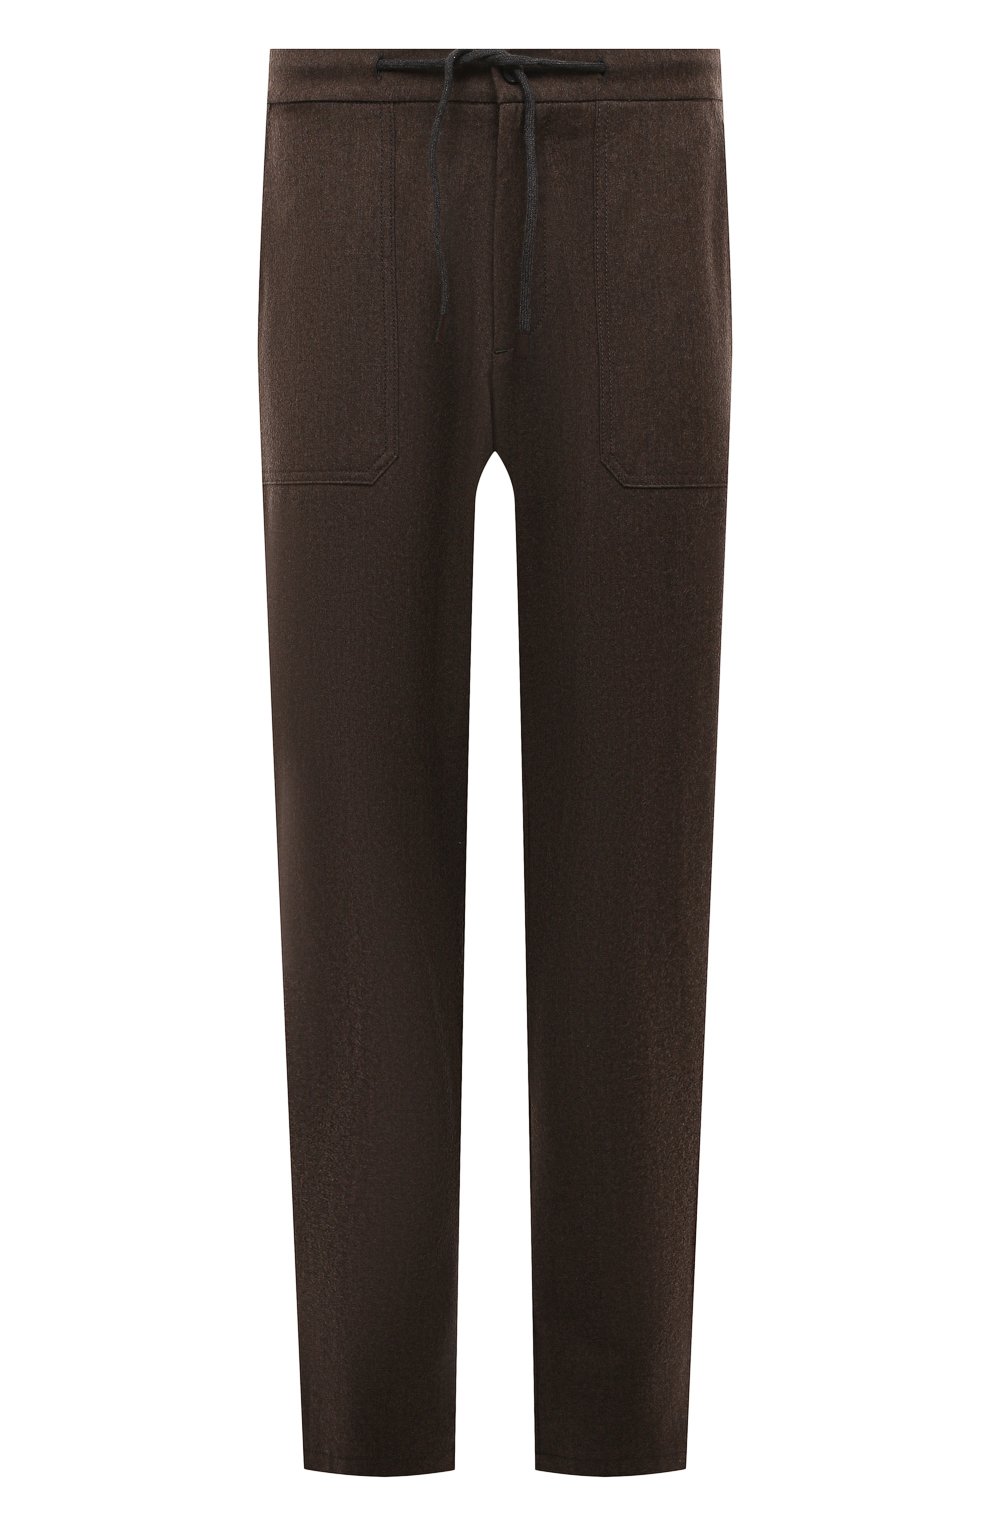 Мужские брюки из шерсти и кашемира MUST коричневого цвета, арт. NIKITA/ZIP/ZIG | Фото 1 (Материал внешний: Шерсть; Длина (брюки, джинсы): Стандартные; Случай: Повседневный; Стили: Кэжуэл)